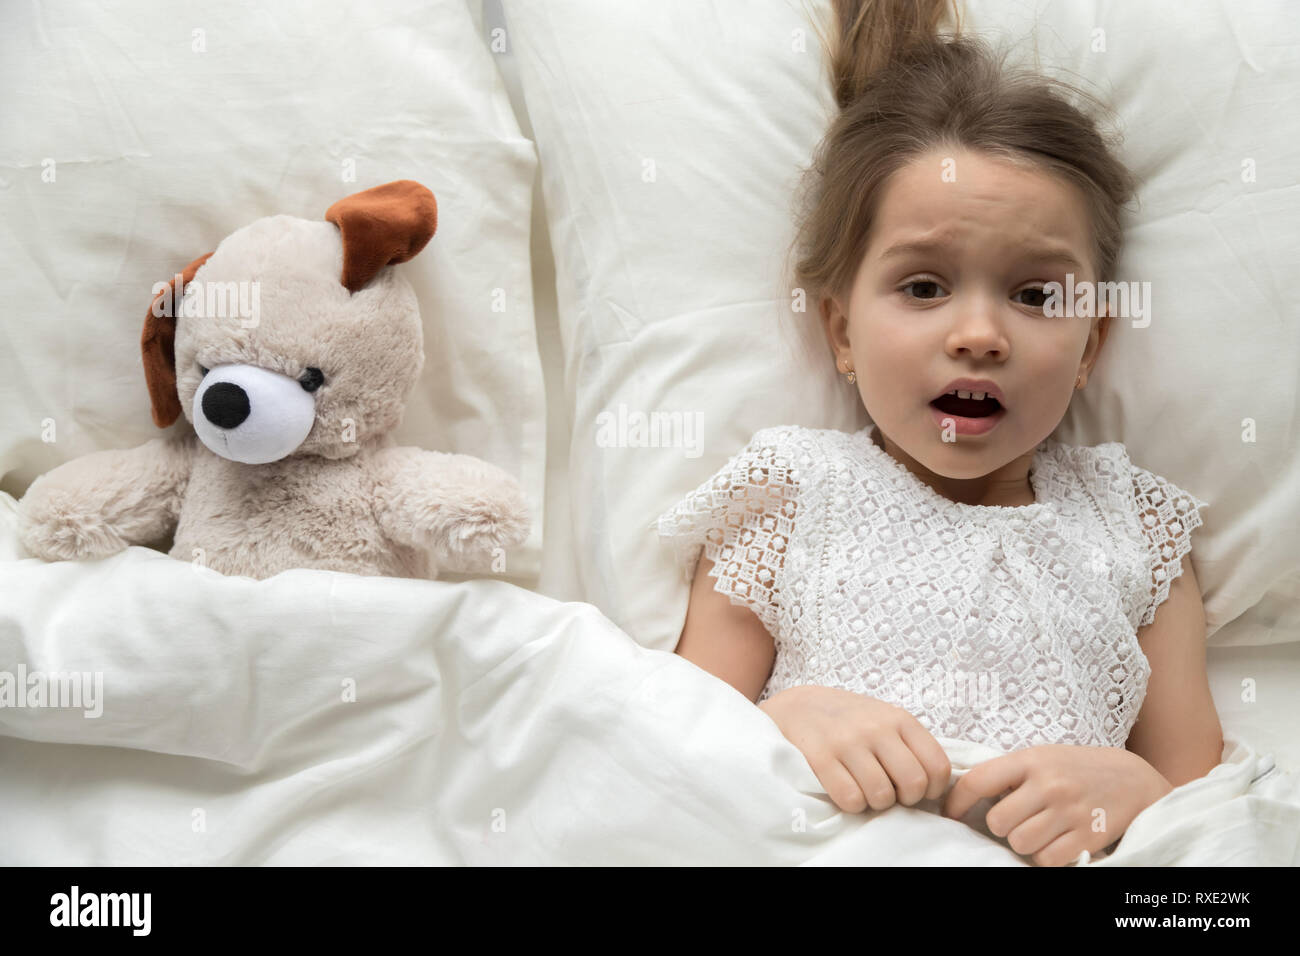 Asustado niño acostado en la cama con miedo de pesadilla de juguete Foto de stock